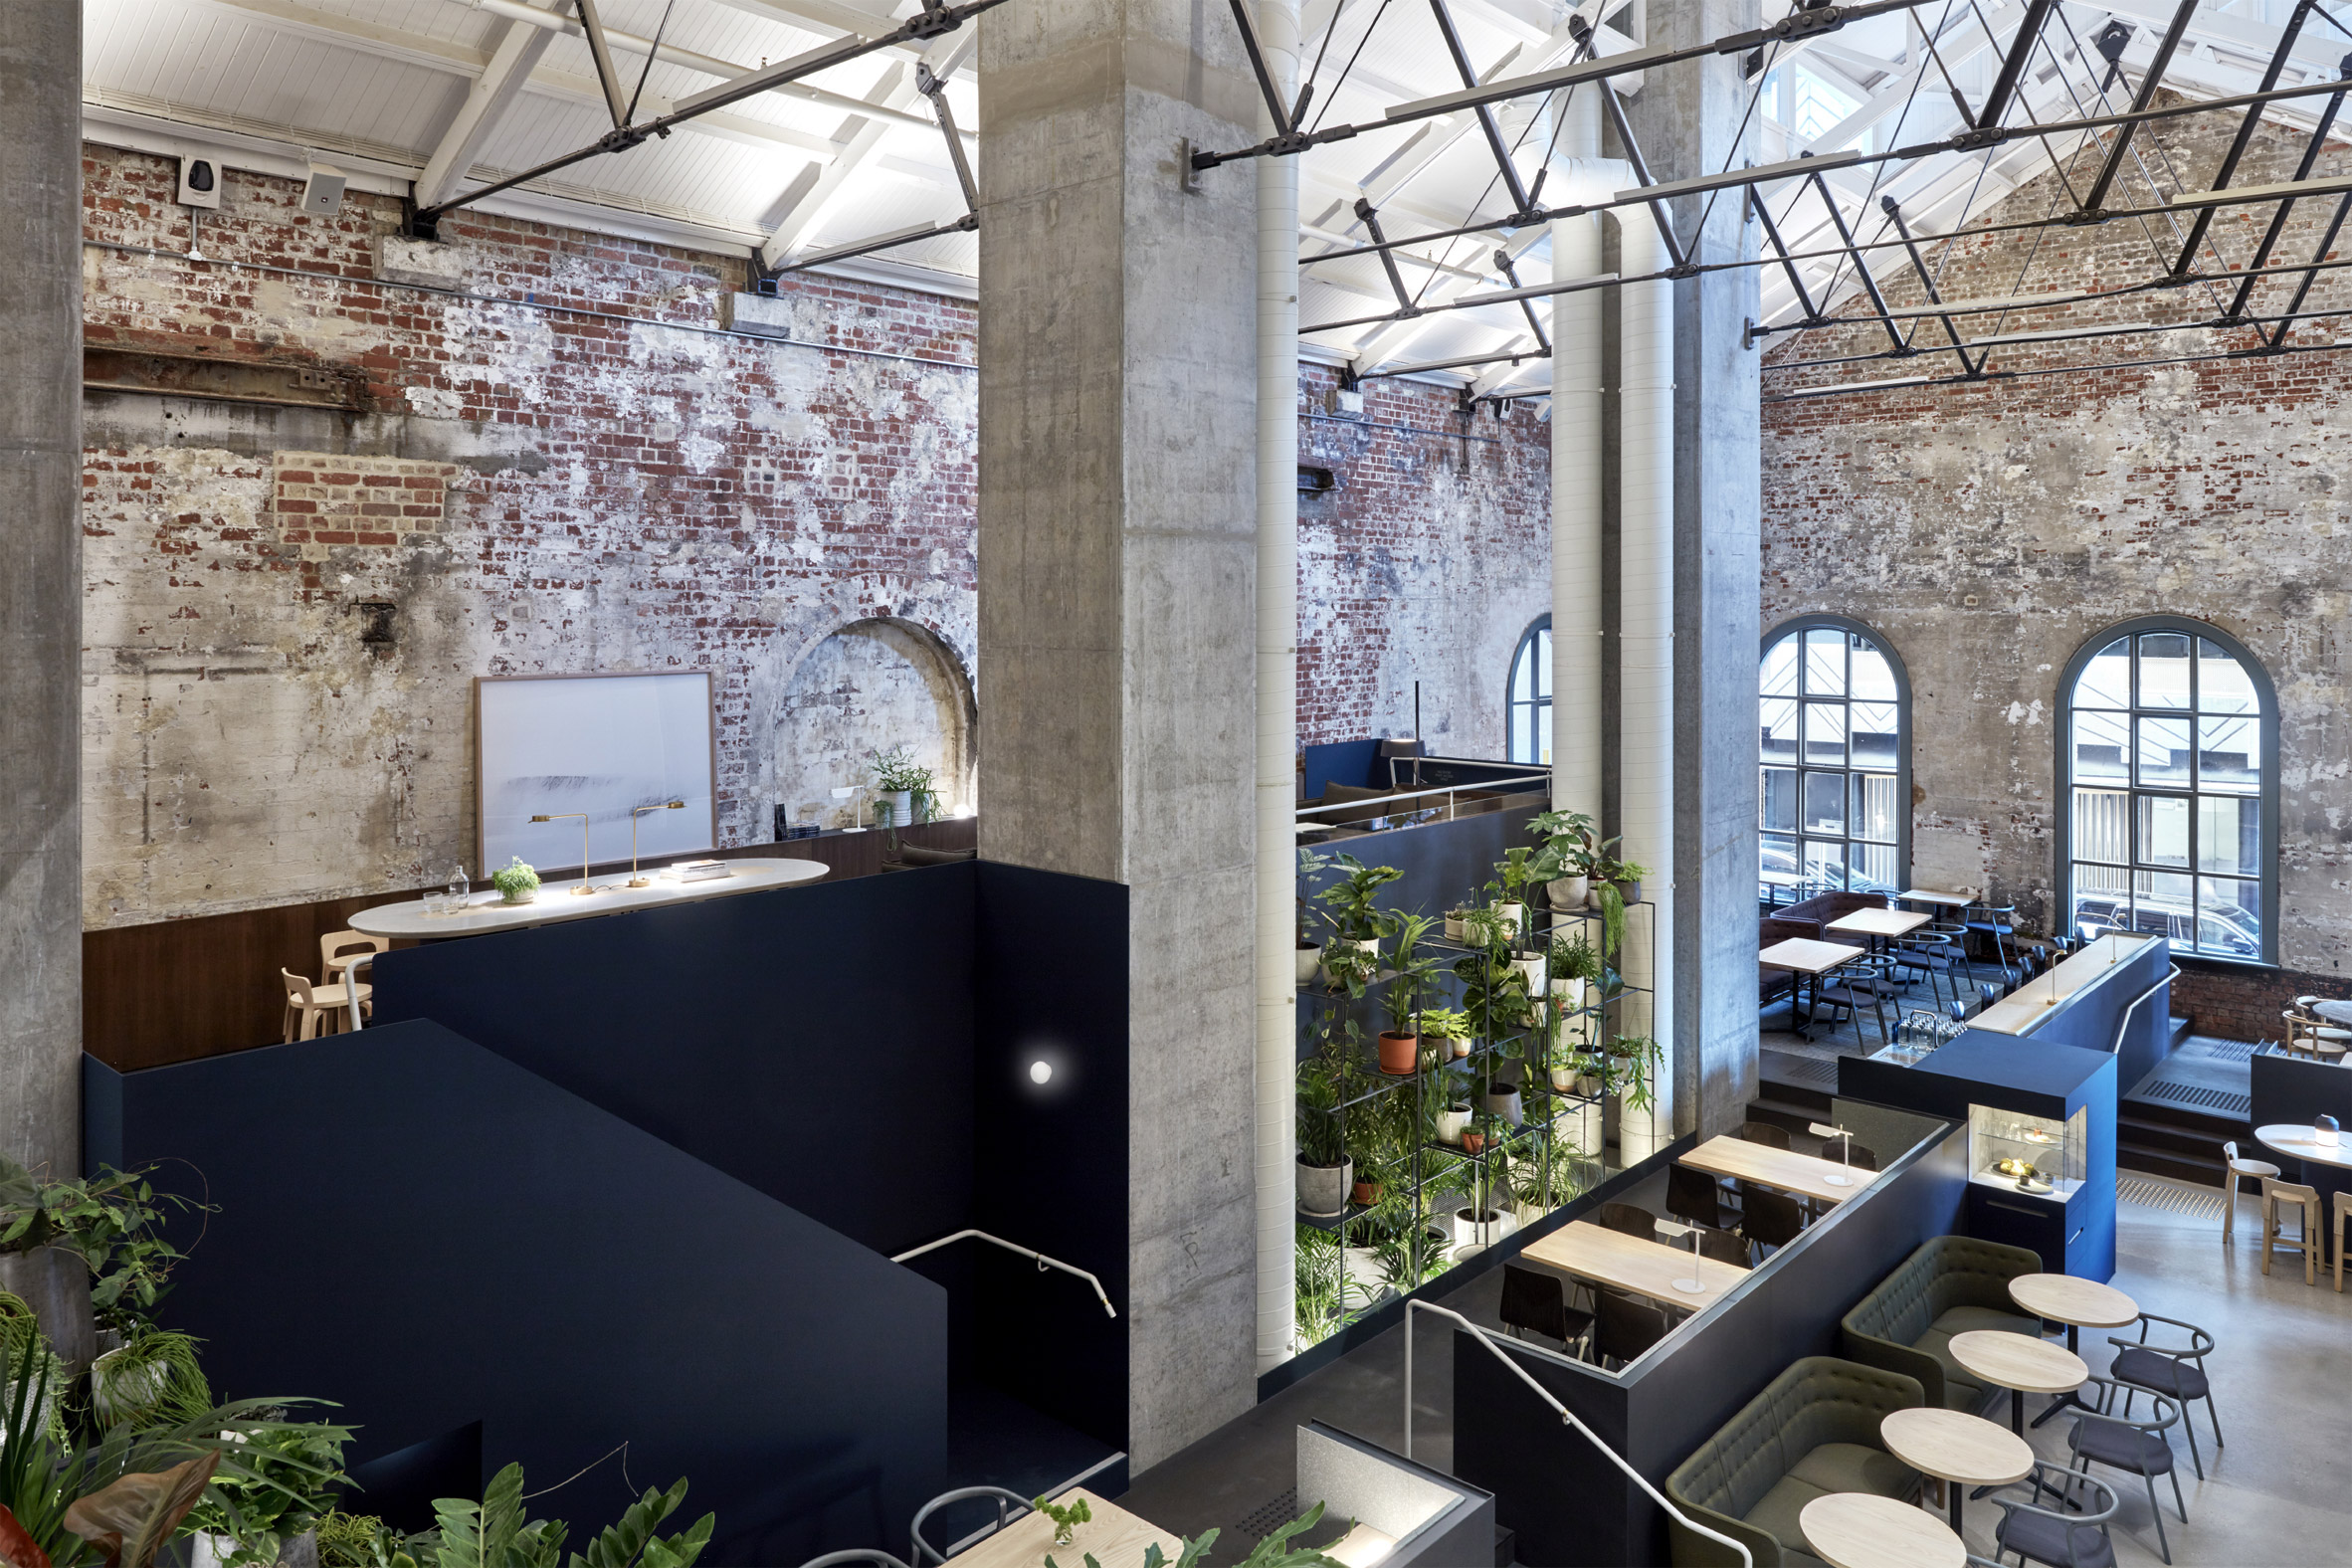 higher-ground-design-office-interior-melbourne-australia_dezeen_2364_col_10-1